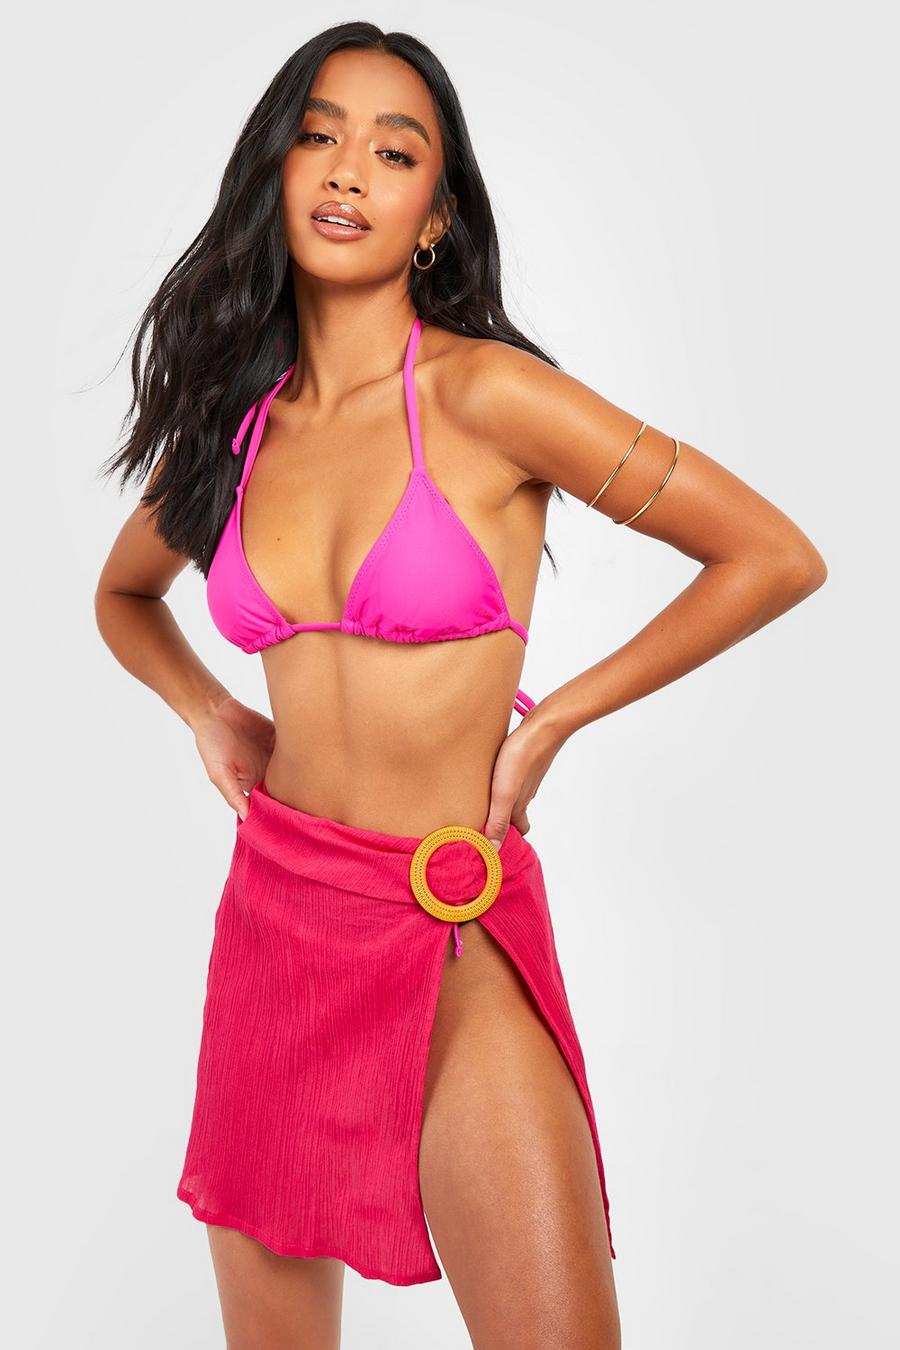 Minifalda Petite para la playa con atadura y anillo, Hot pink